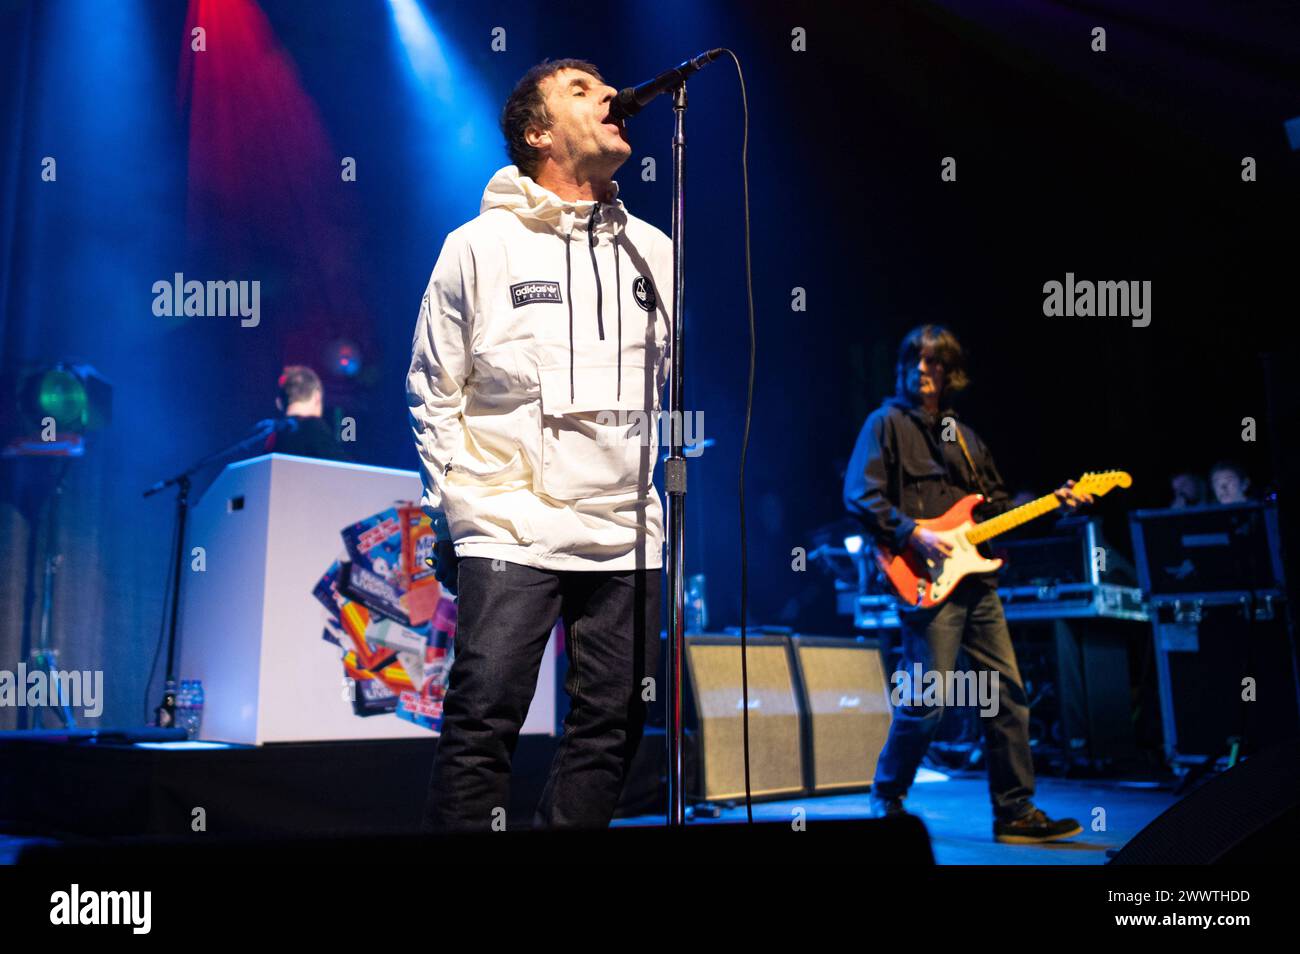 Liam Gallagher e John Squire in Concert a Londra Liam Gallagher e John Squire sul palco all'O2 Forum Kentish Town, Londra. London O2 Forum Kentish Town Regno Unito Copyright: XJohnxBarryx JB2 9285 Foto Stock